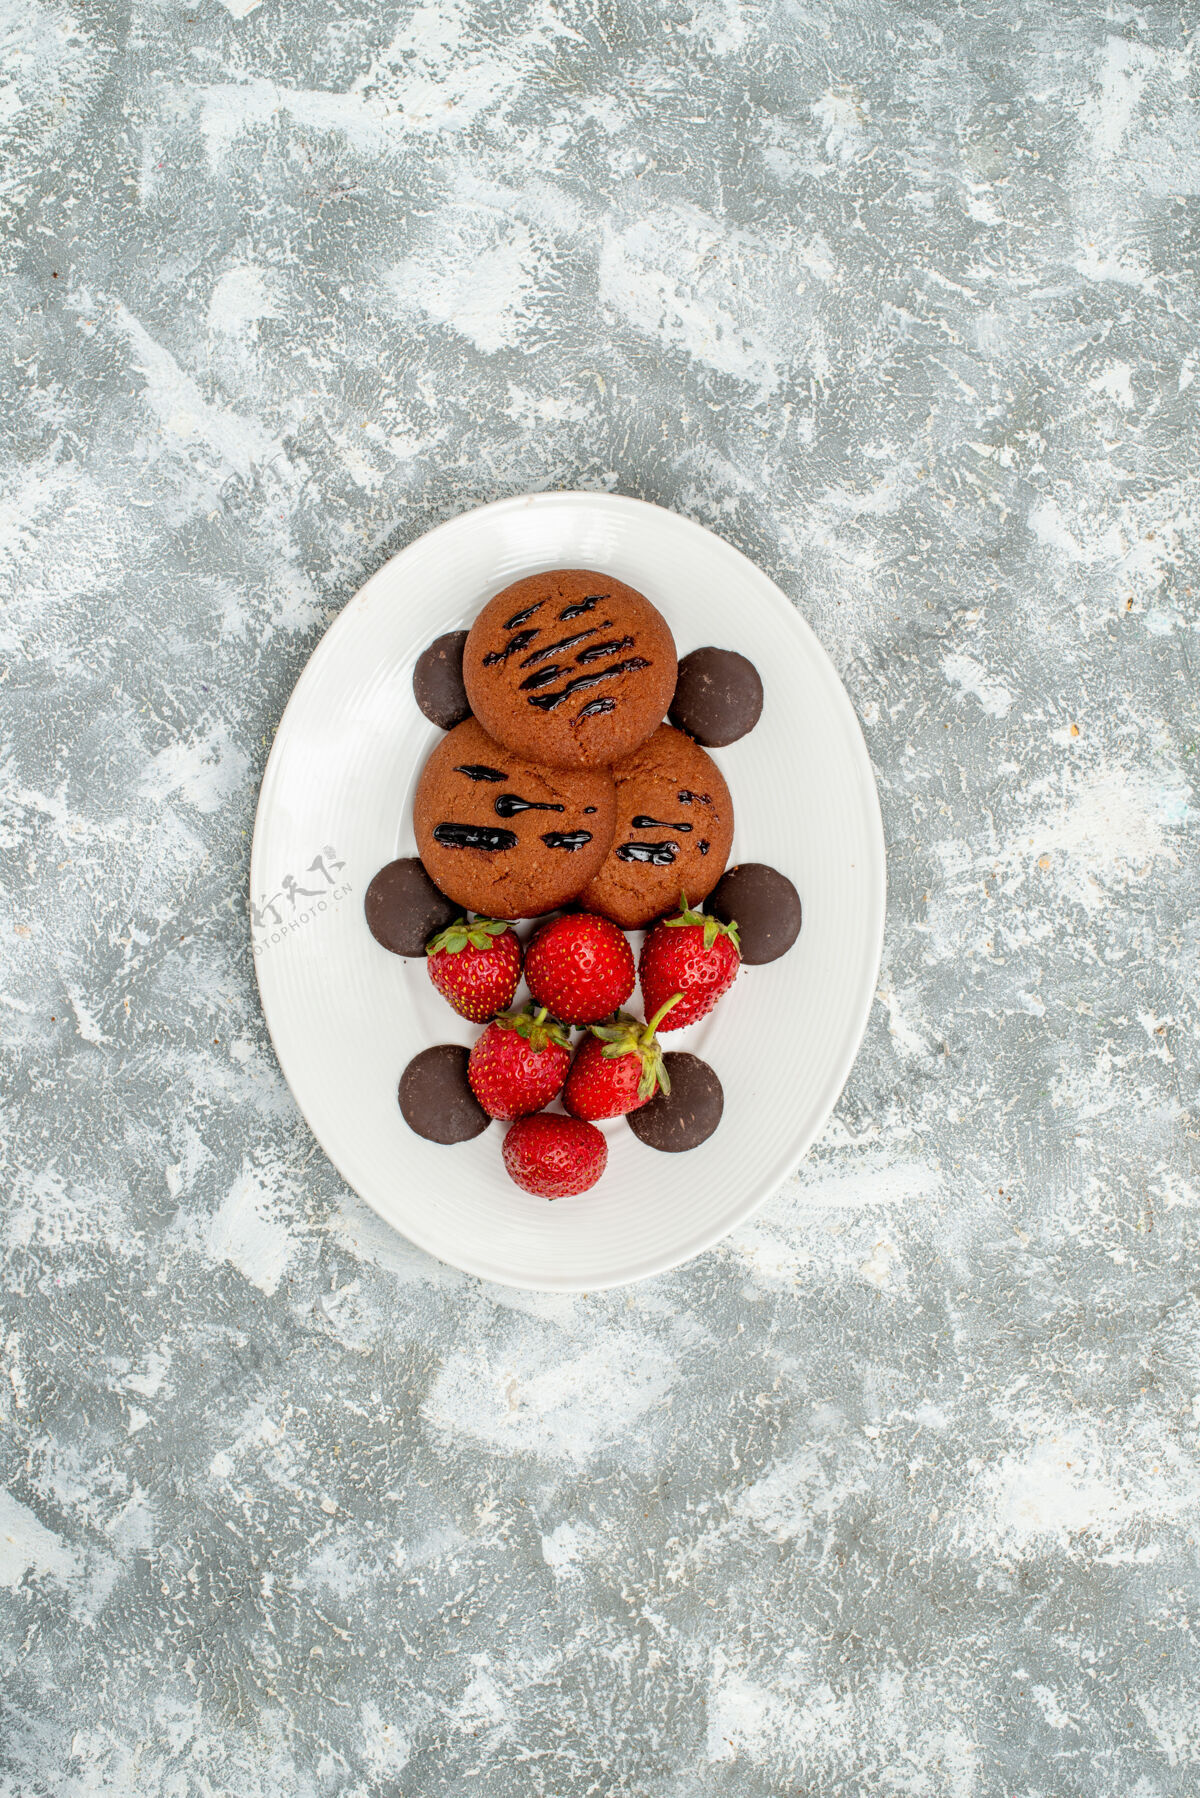 盘子顶远景巧克力饼干草莓和圆巧克力在白色椭圆形盘子上的灰白色地面甜点蓝莓红醋栗